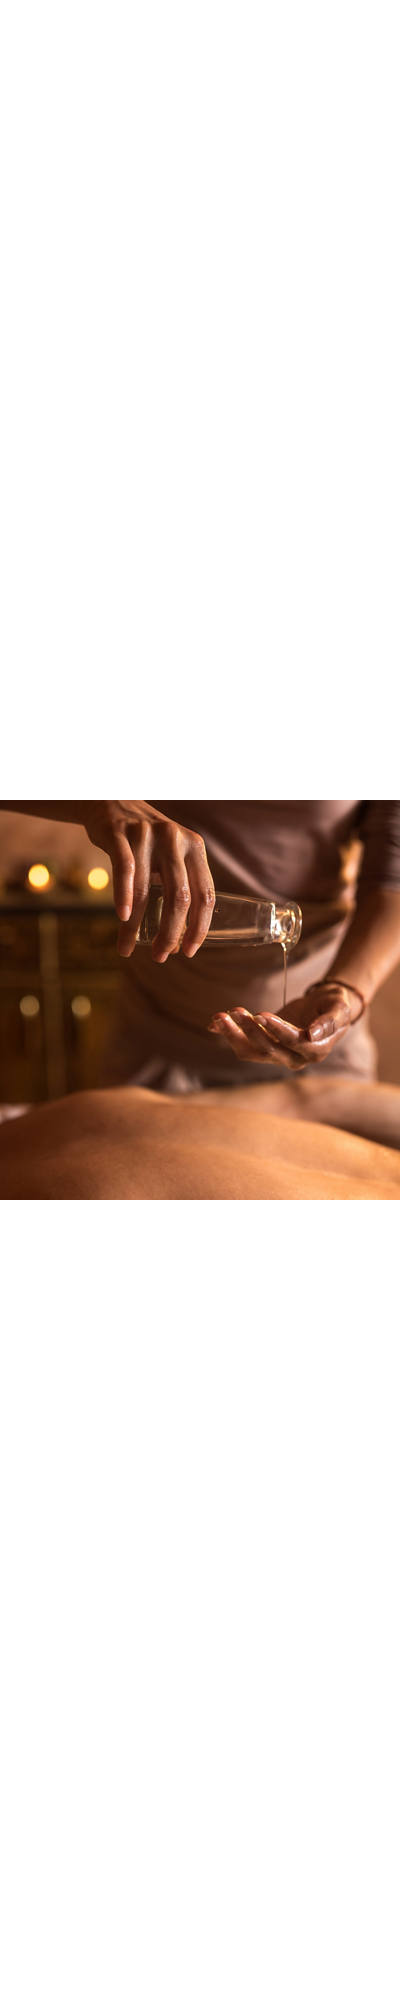 Ayurveda Massage: Mehr als sanfte Striche mit Öl